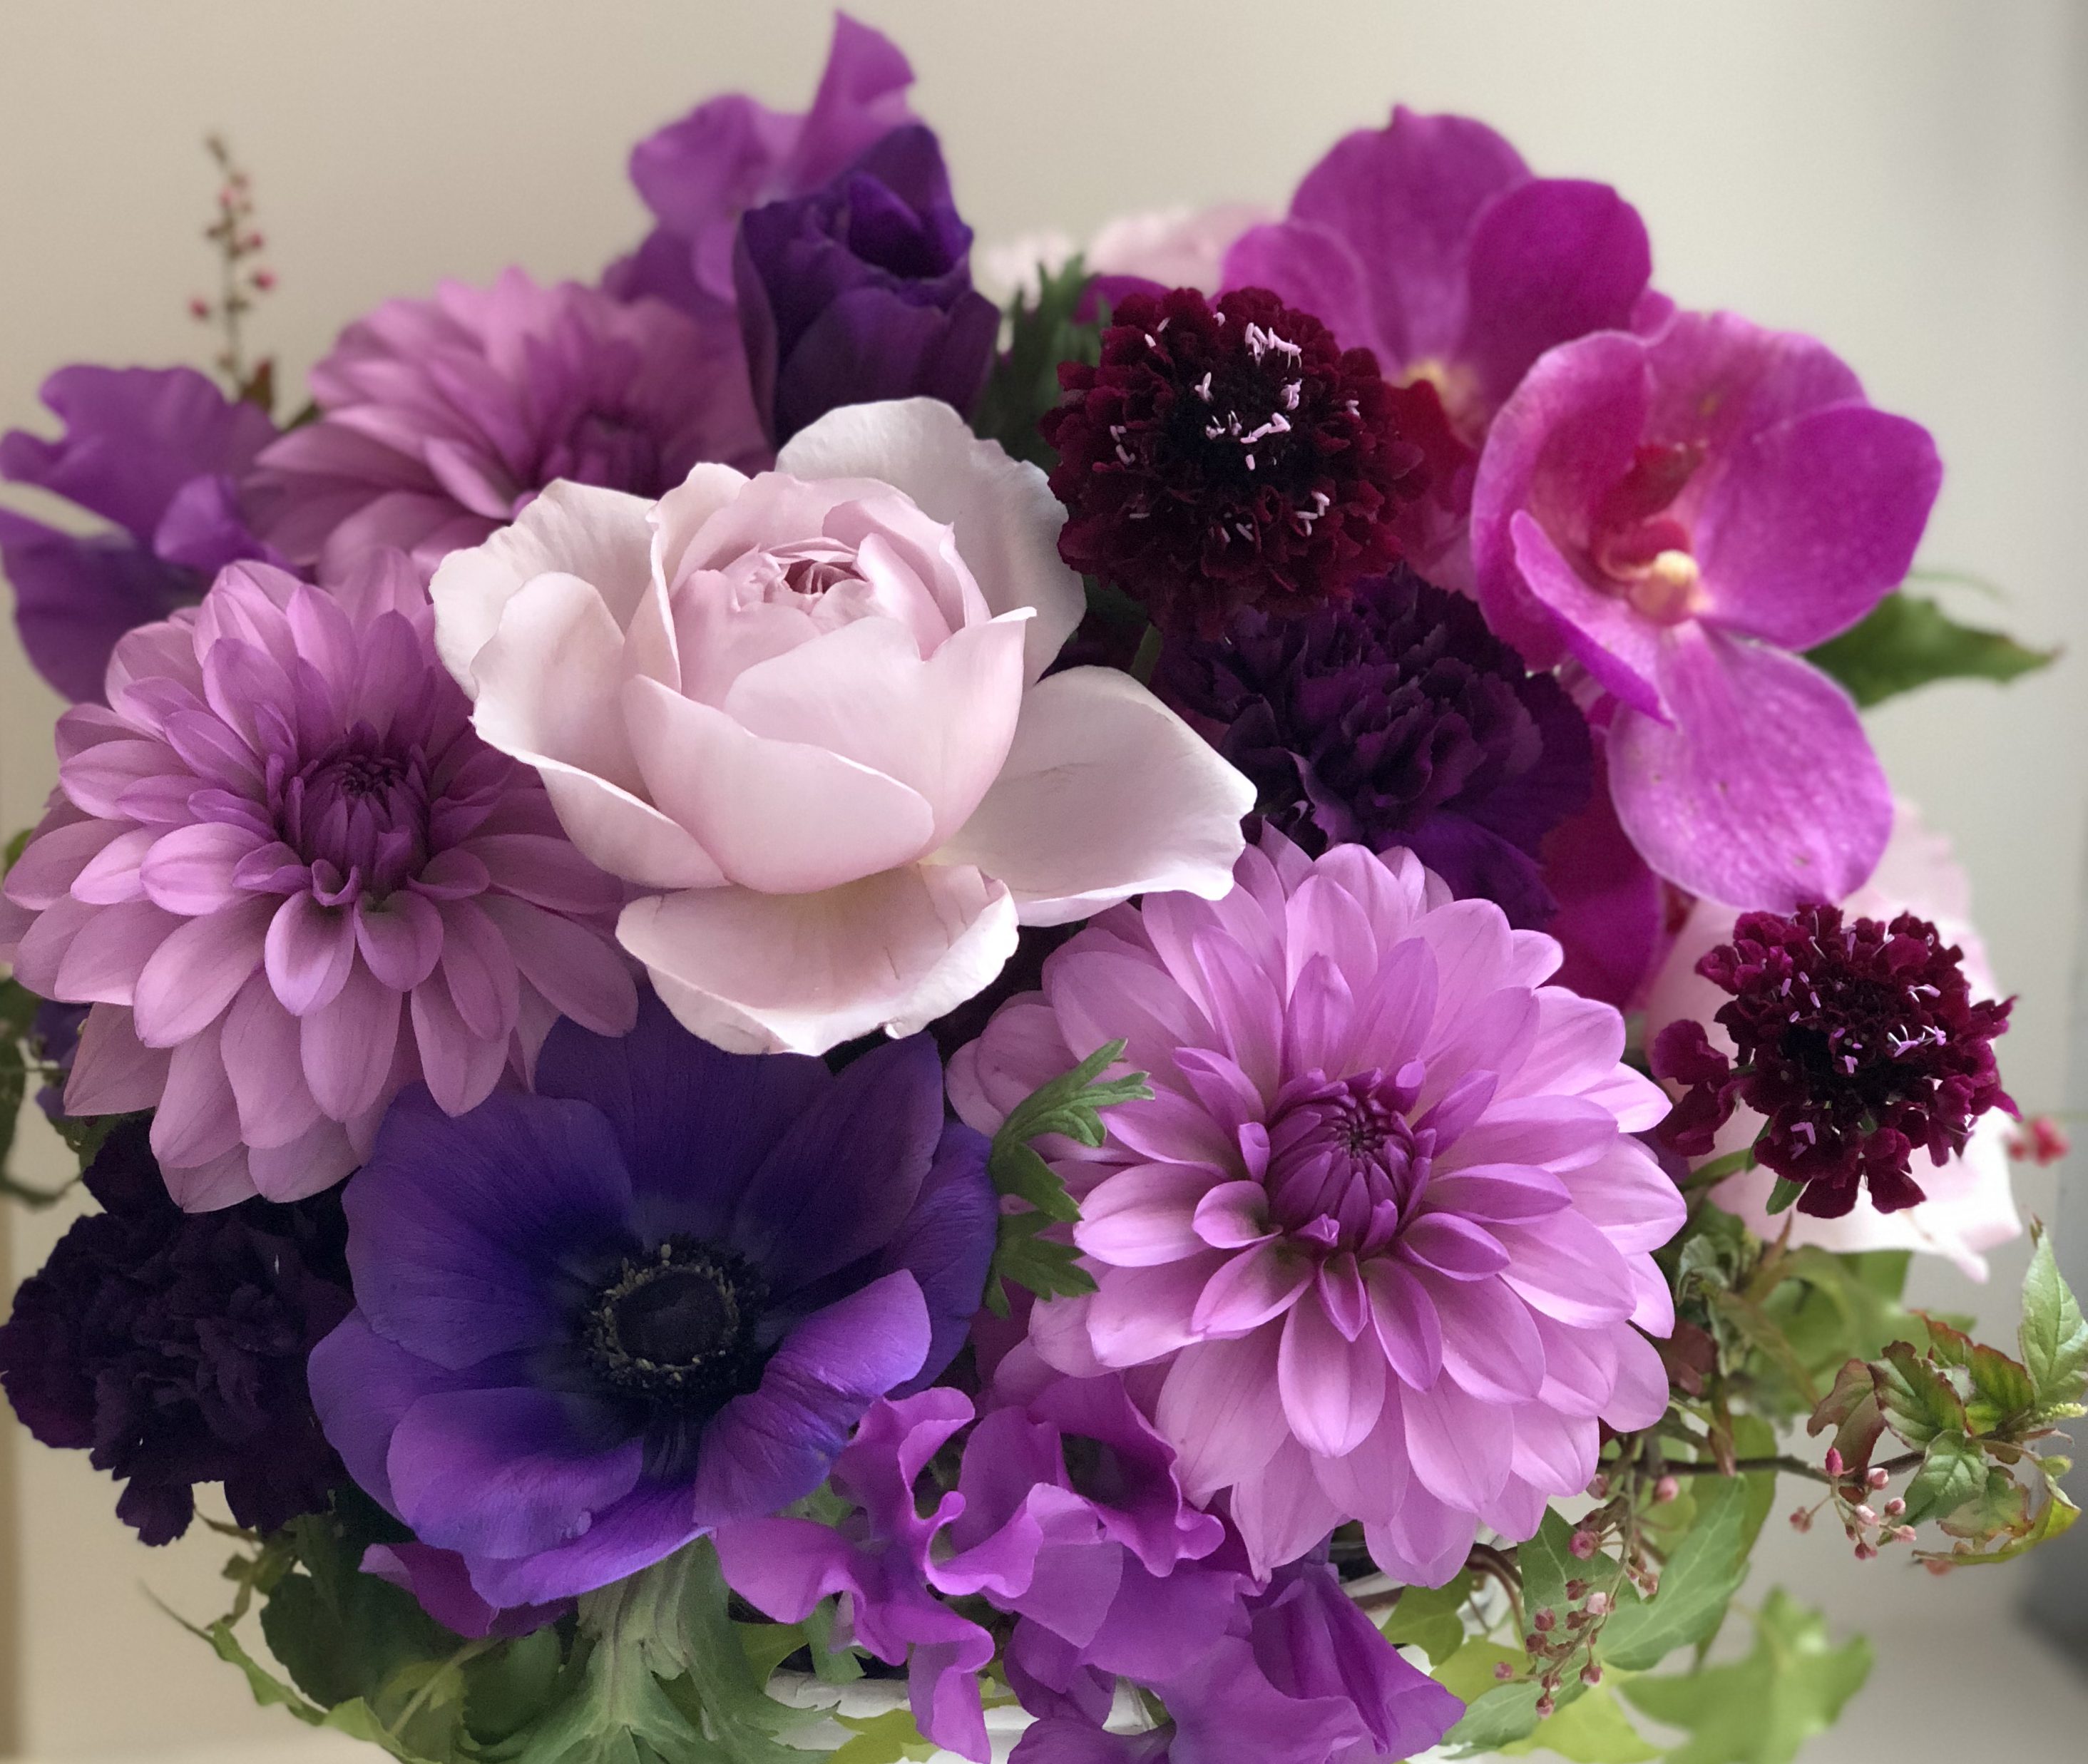 古希のお祝いに贈る花は縁起の良い濃い紫色を入れて。 | FLORIST IRIE 